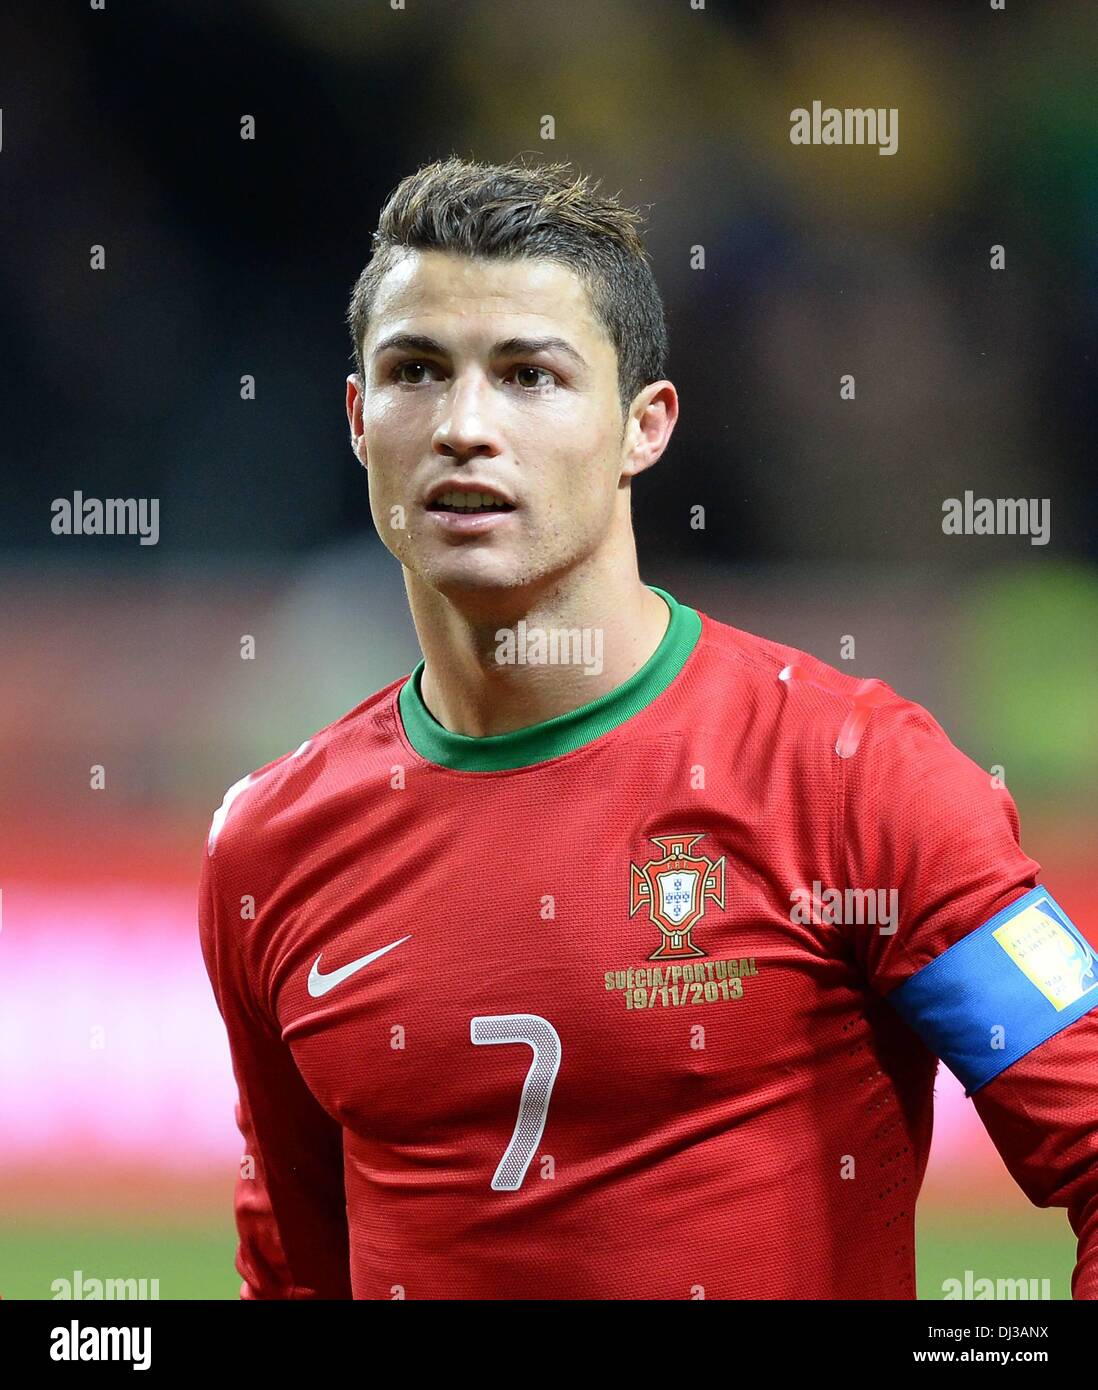 Estocolmo, Suecia. 19 Nov, 2013. Calificación de la Copa del Mundo 2014  Playoff en Estocolmo. Suecia contra Portugal. Cristiano Ronaldo fue el hat  trick hero para Portugal Crédito: Además de los deportes